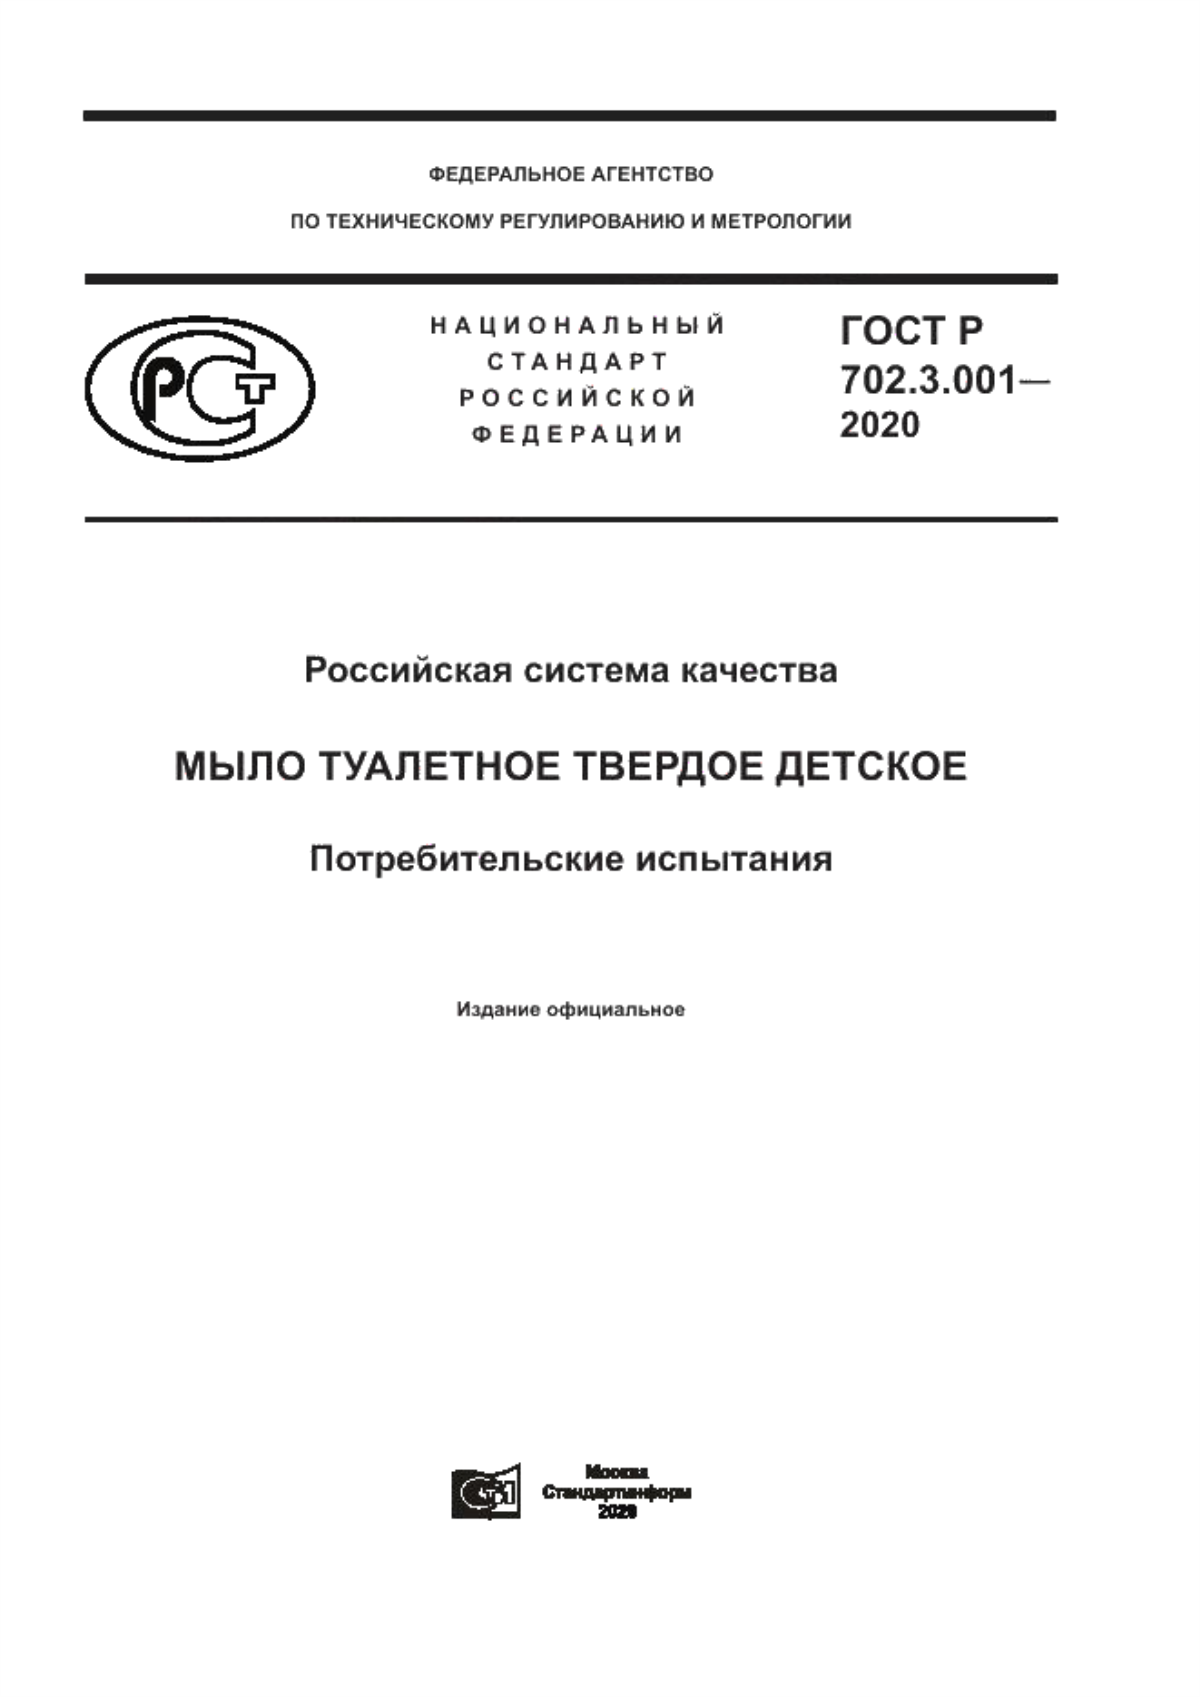 ГОСТ Р 702.3.001-2020 Российская система качества. Мыло туалетное твердое детское. Потребительские испытания